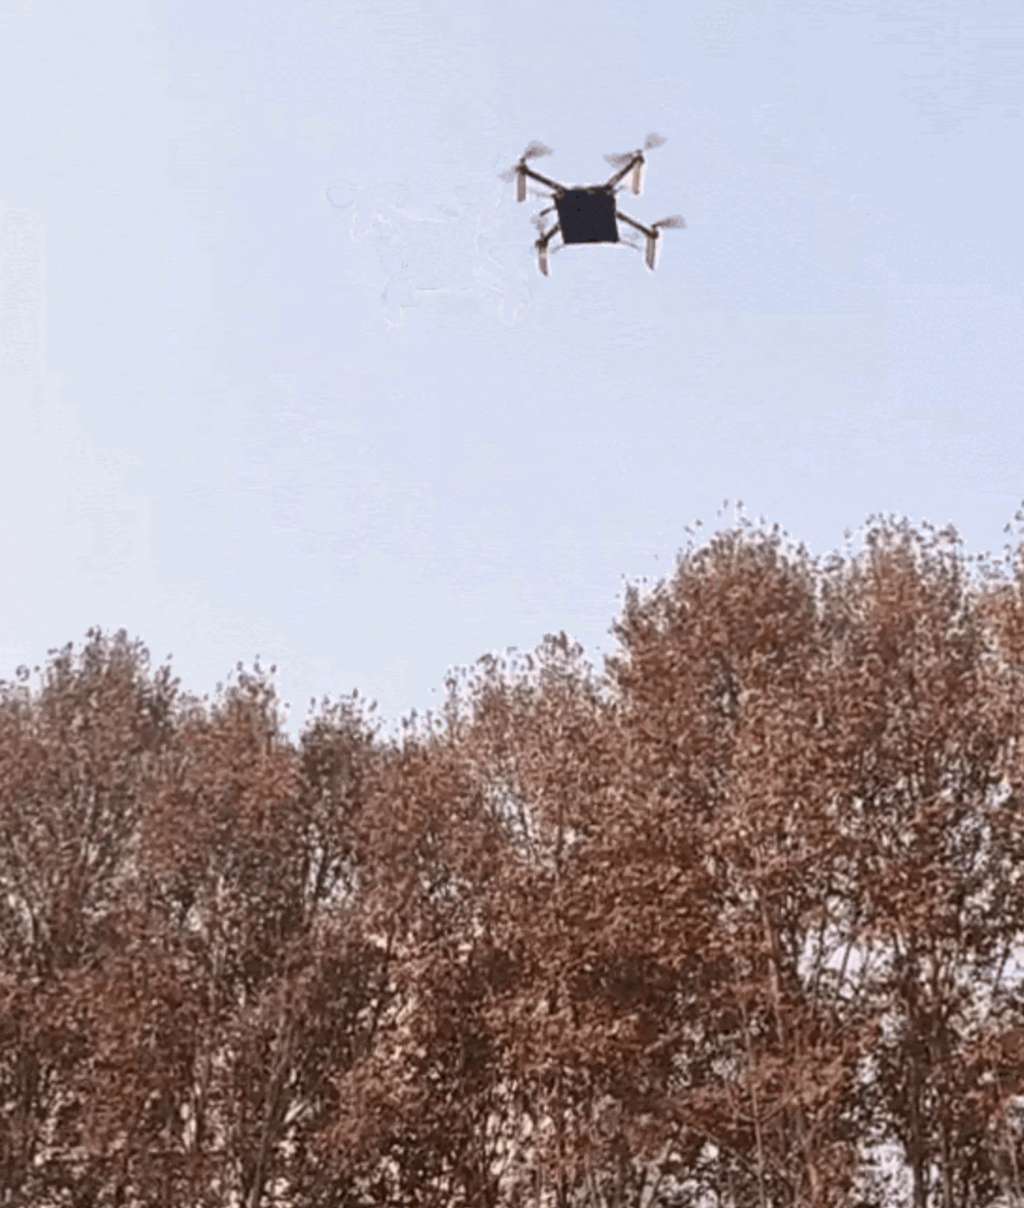 Le drone ODD utilisé par le labo lors de son vol d’essai en journée. On peut voir l’imposante plaque photovoltaïque du récepteur d’énergie sous l’aéronef. © NPU